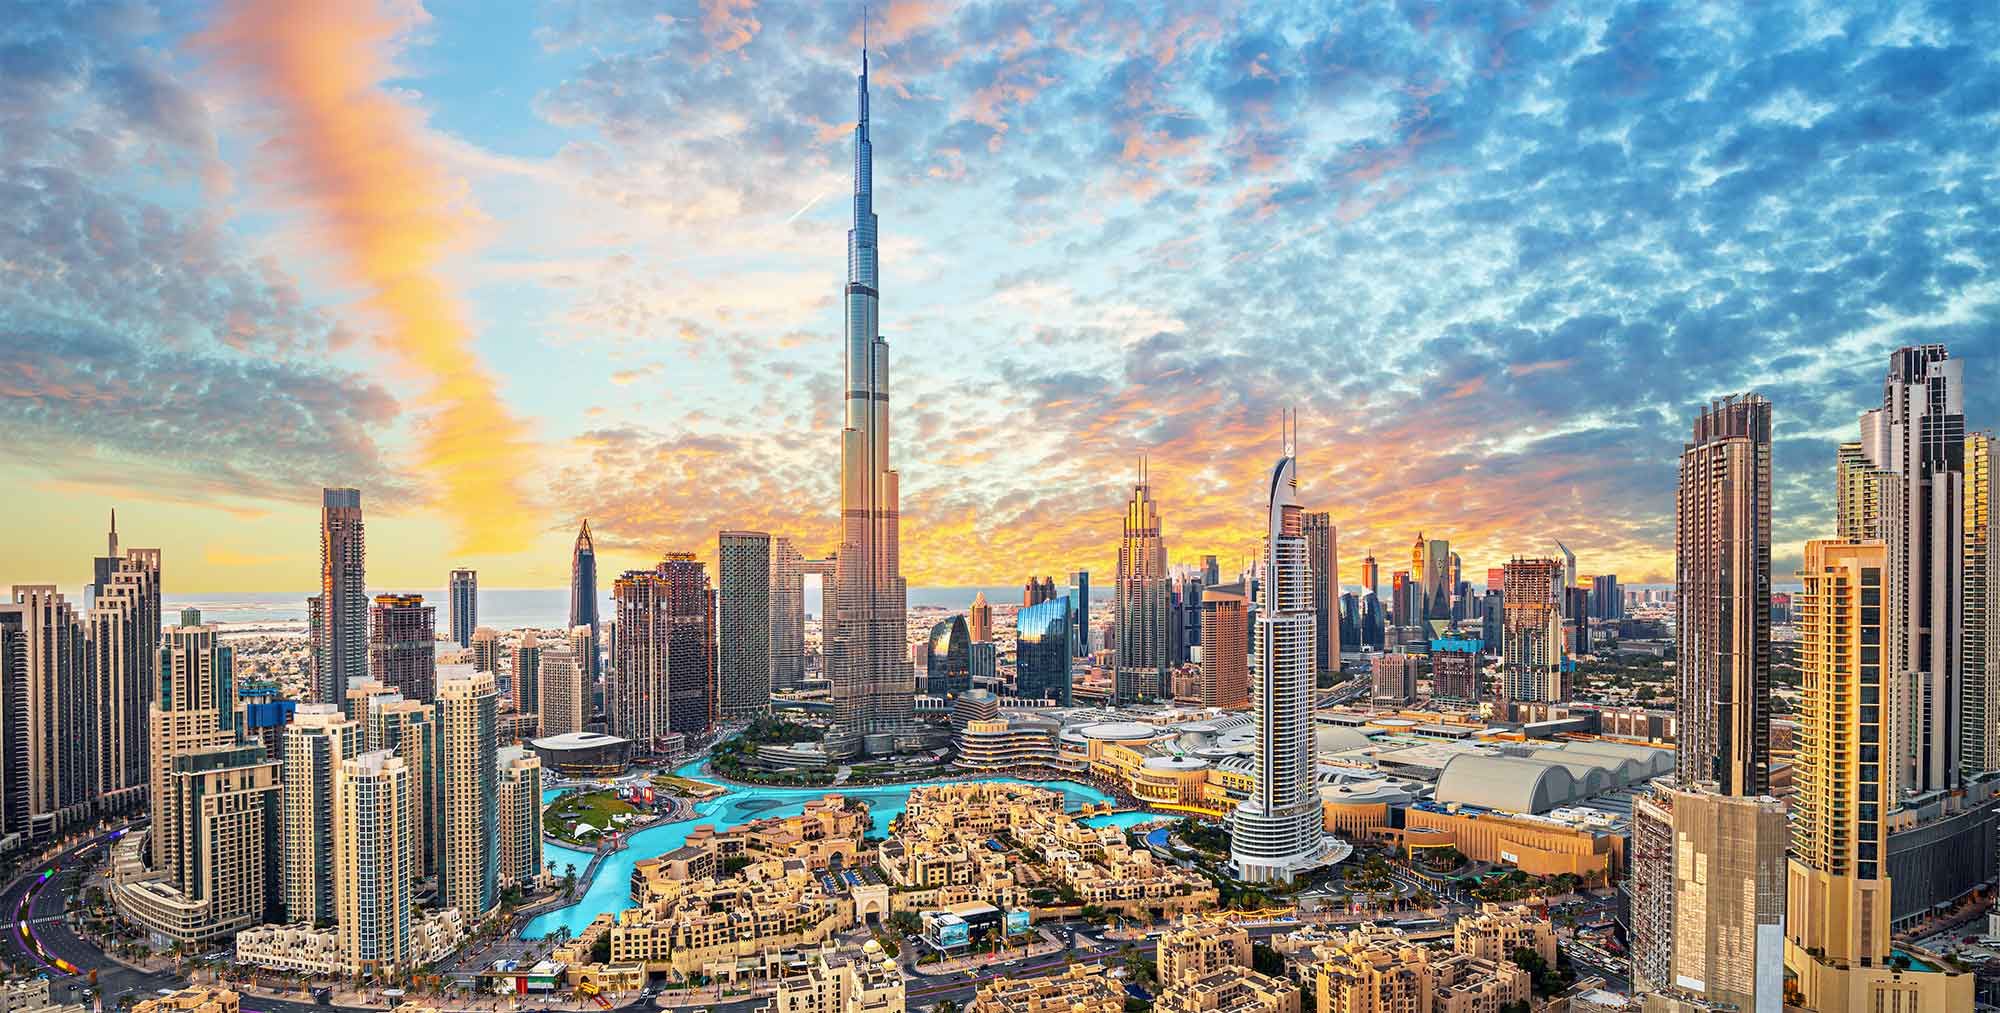 Dubai - Descubre Burj Khalifa##Descubre Palm Jumeirah##Descubre Safari en Desierto